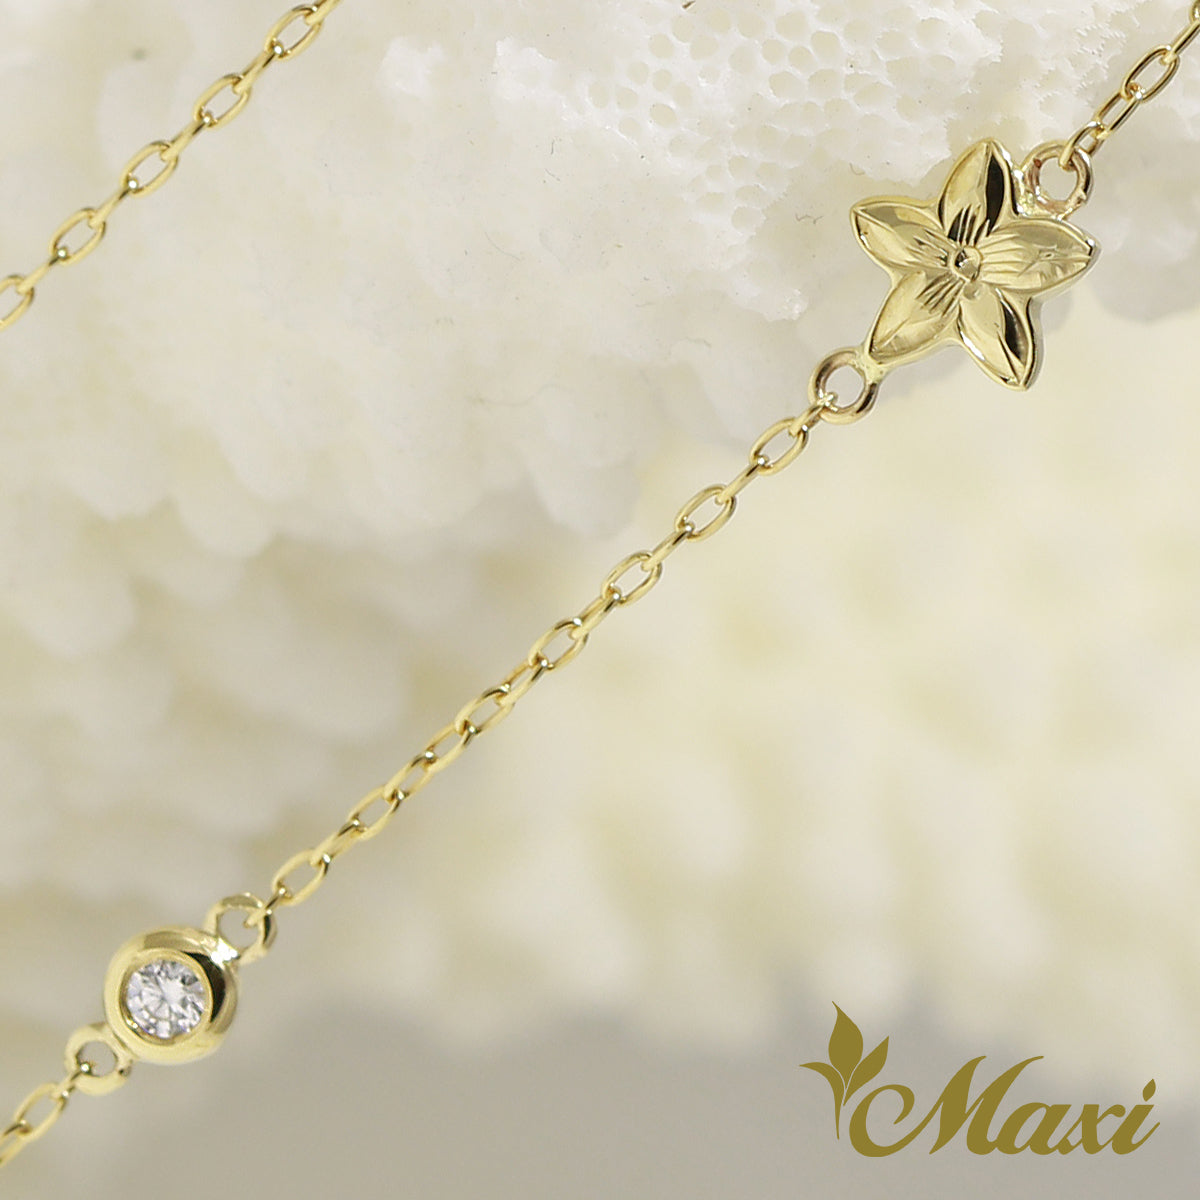 14K Gold] Plumeria Flower Charm Bracelet/Anklet with Diamond [Made